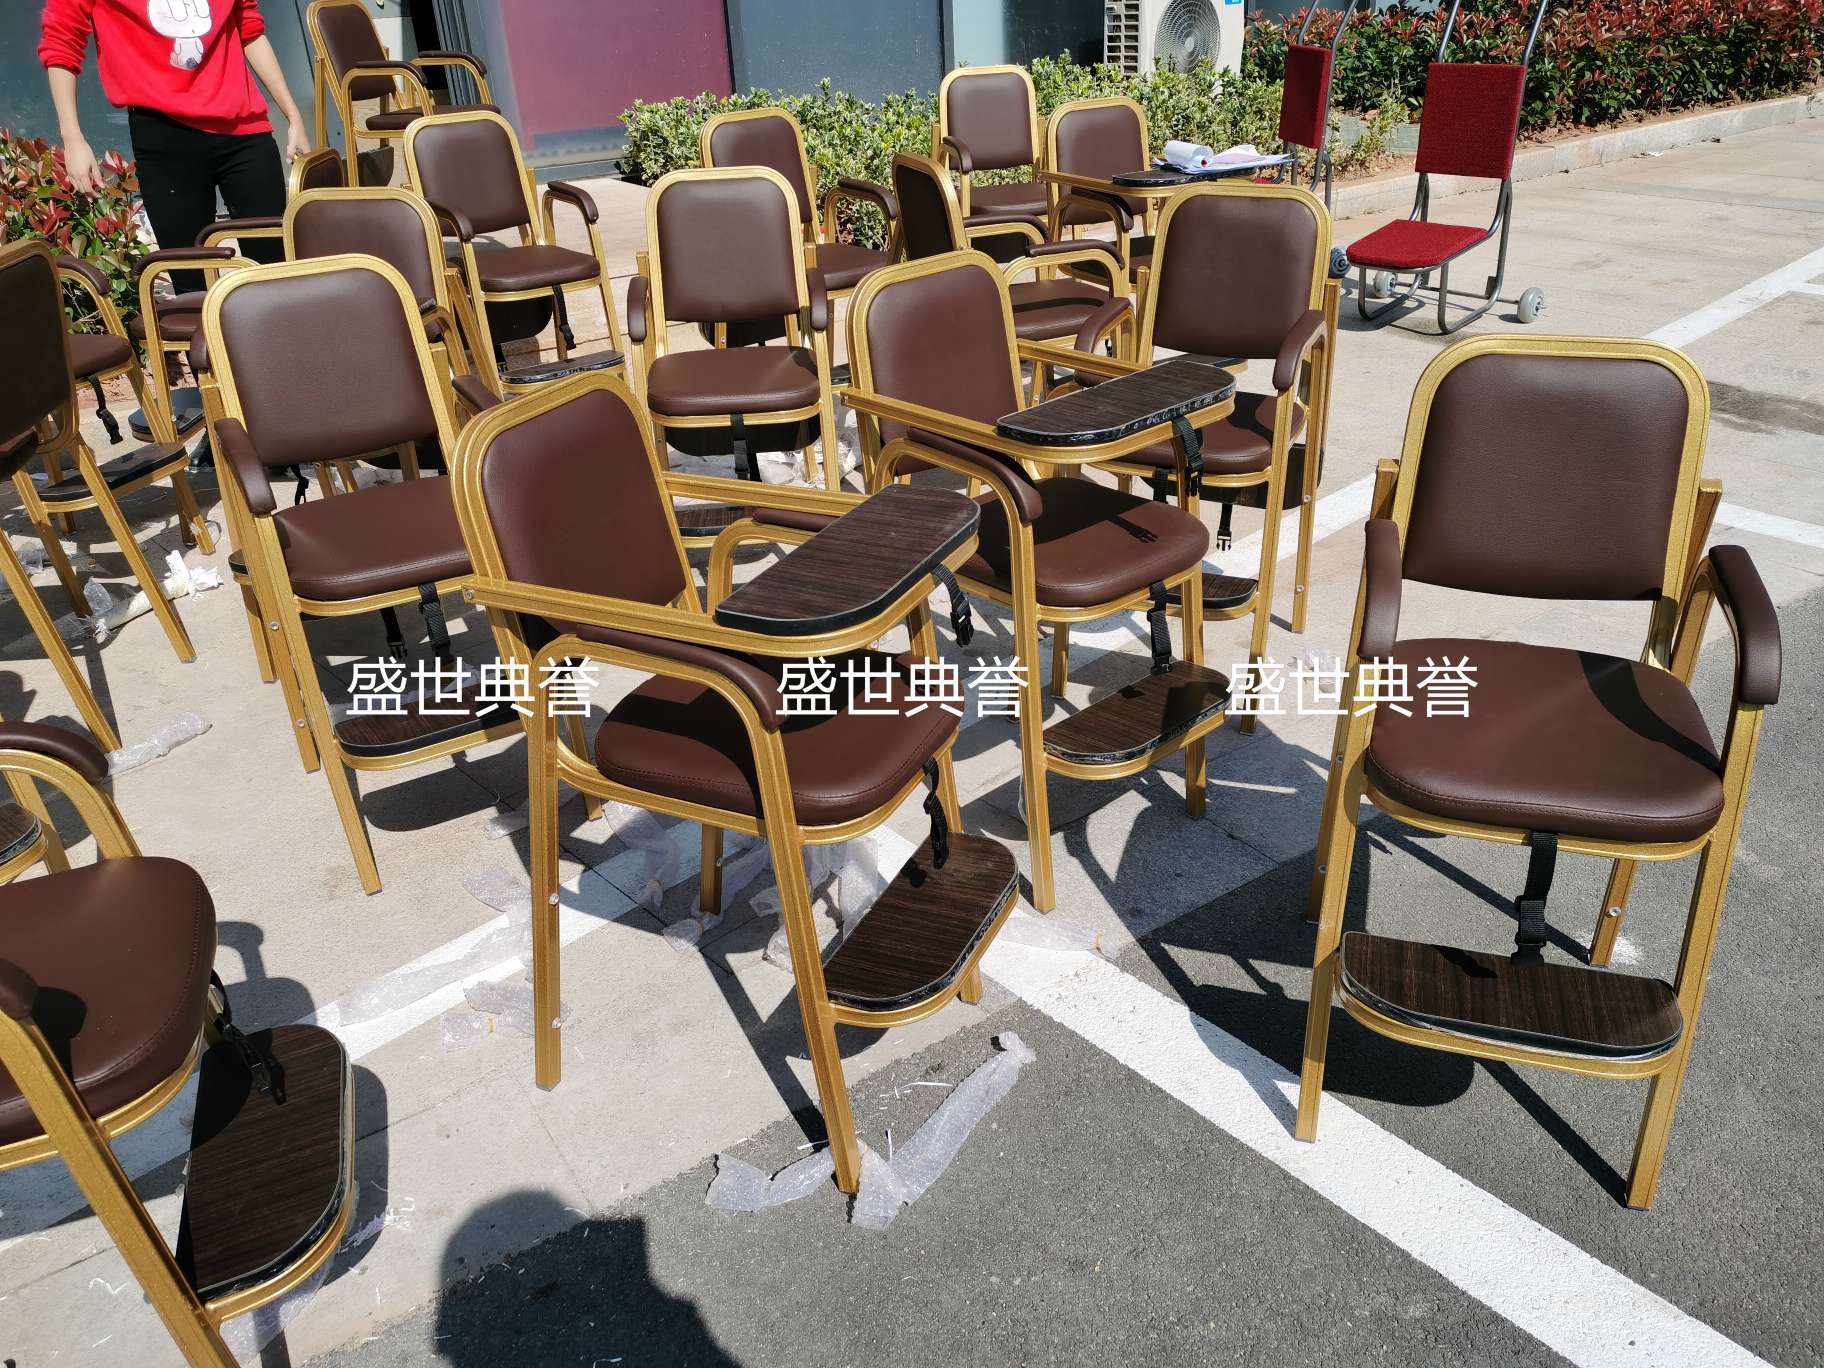 上海五星级酒店宴会厅宝宝餐椅饭店包厢儿童就餐椅子铝合金宝宝椅详情图11